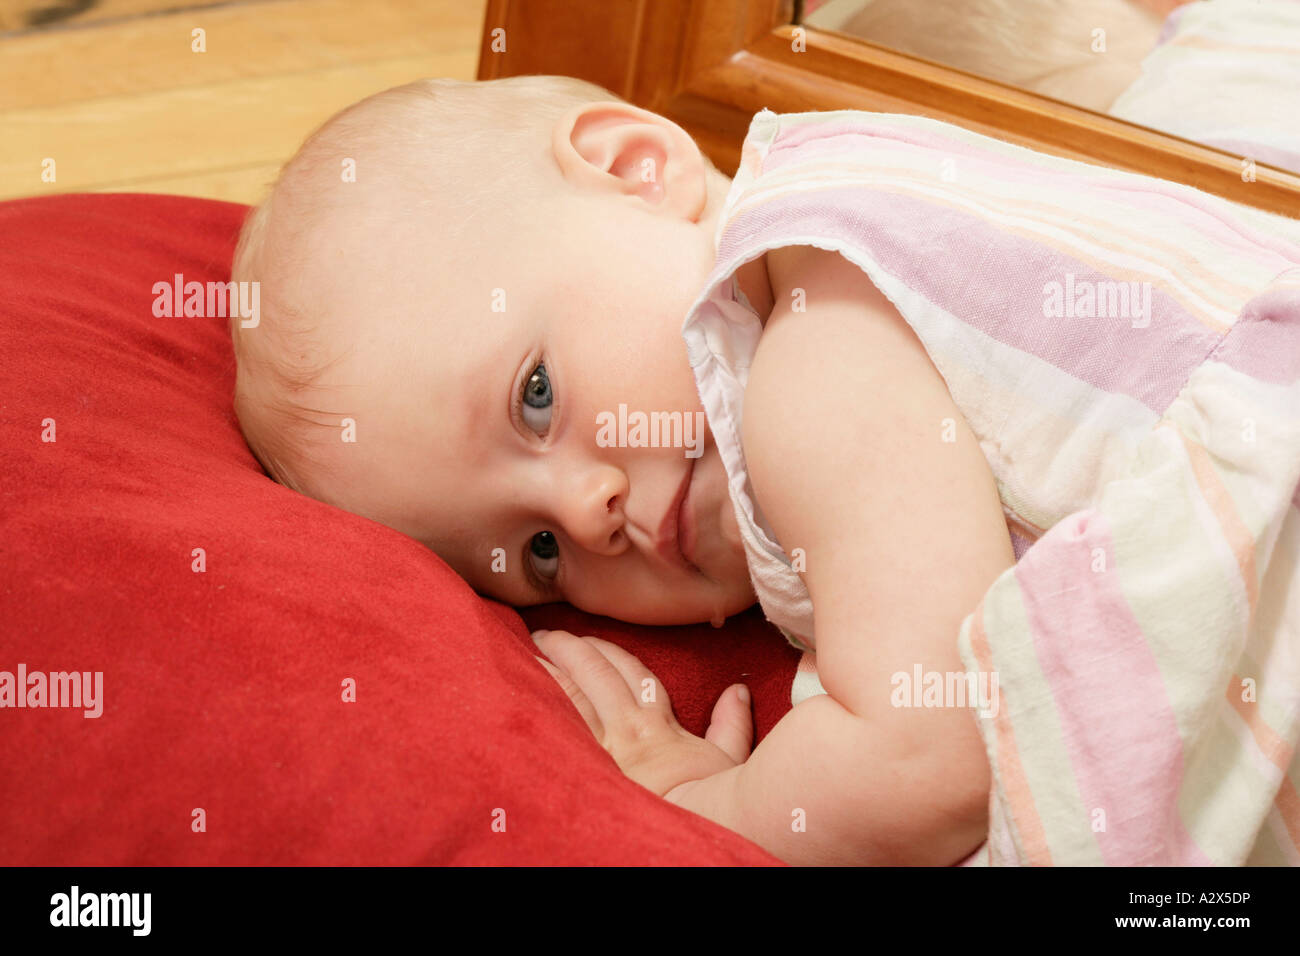 Gute nacht, baby -Fotos und -Bildmaterial in hoher Auflösung – Alamy